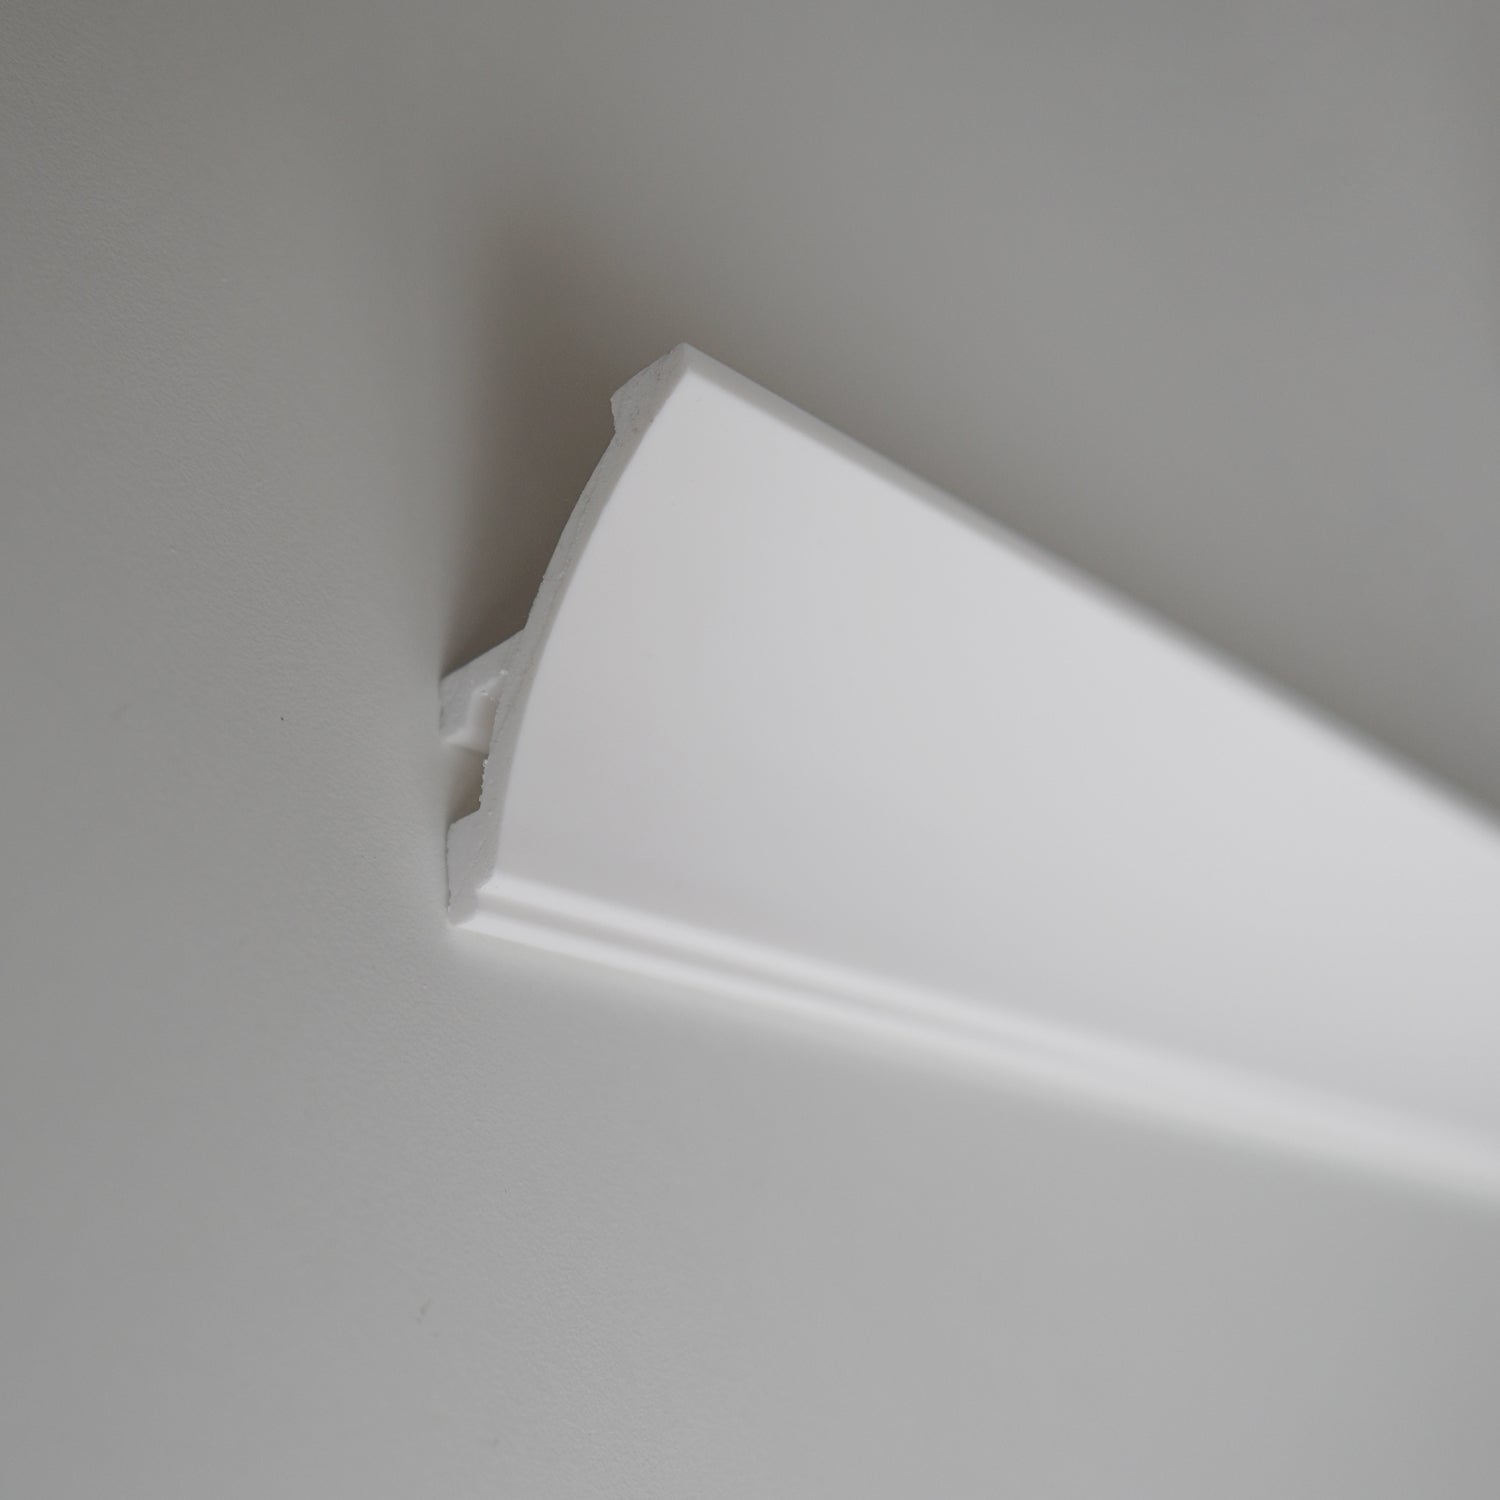 KH904 da 2 metri - Cornici velette per led a soffitto e parete, per illuminazione indiretta con le strisce led